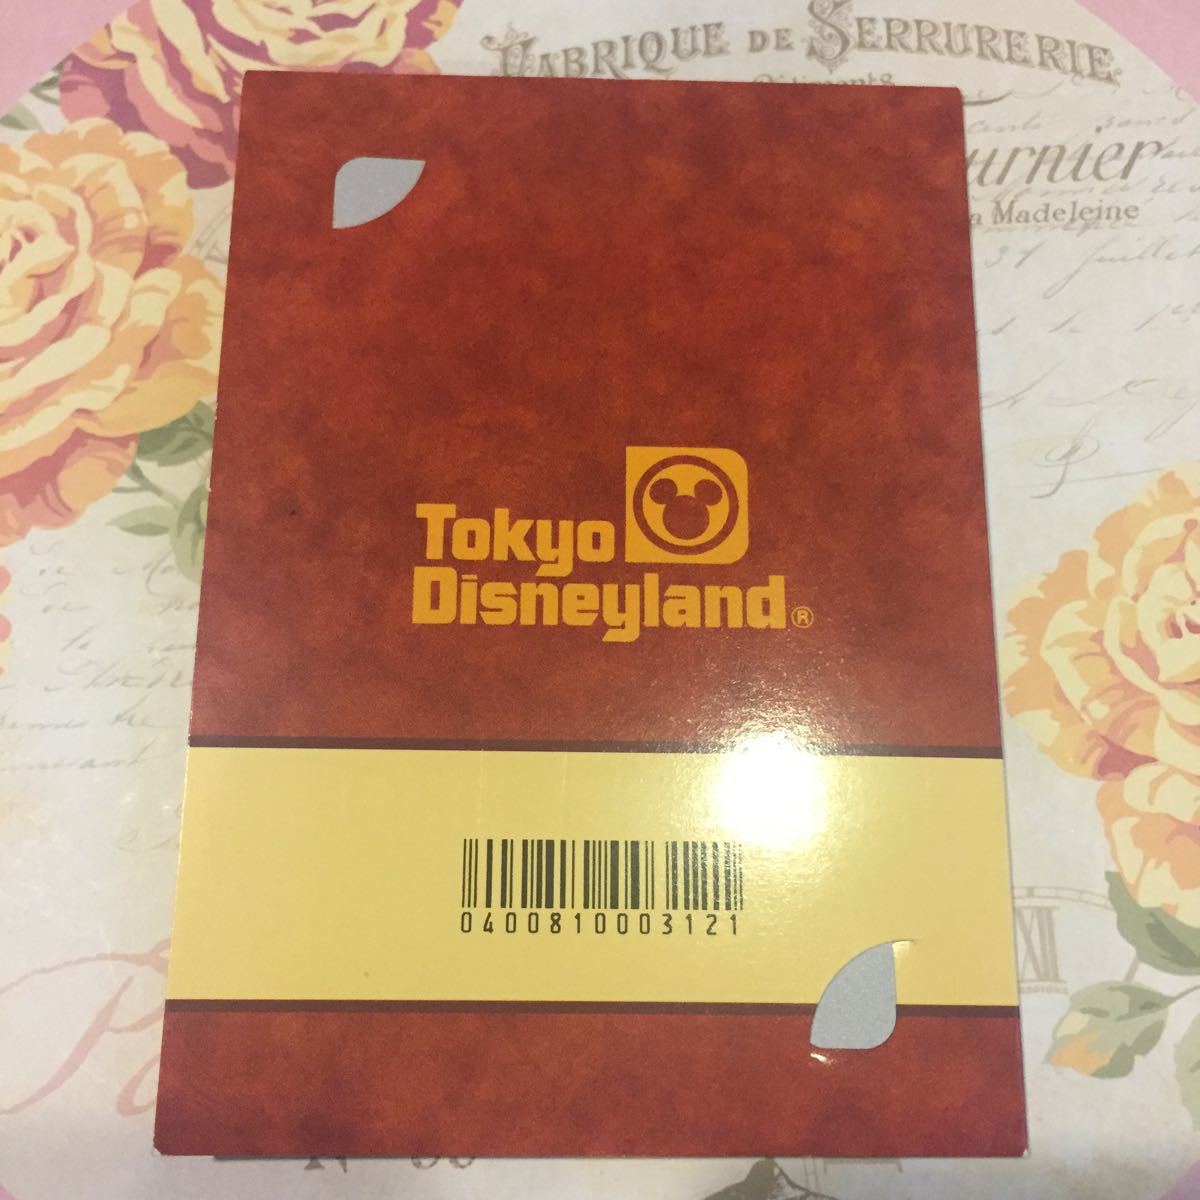  новый товар не использовался Disney Land ограничение телефон карта pekos Goofy телефонная карточка 